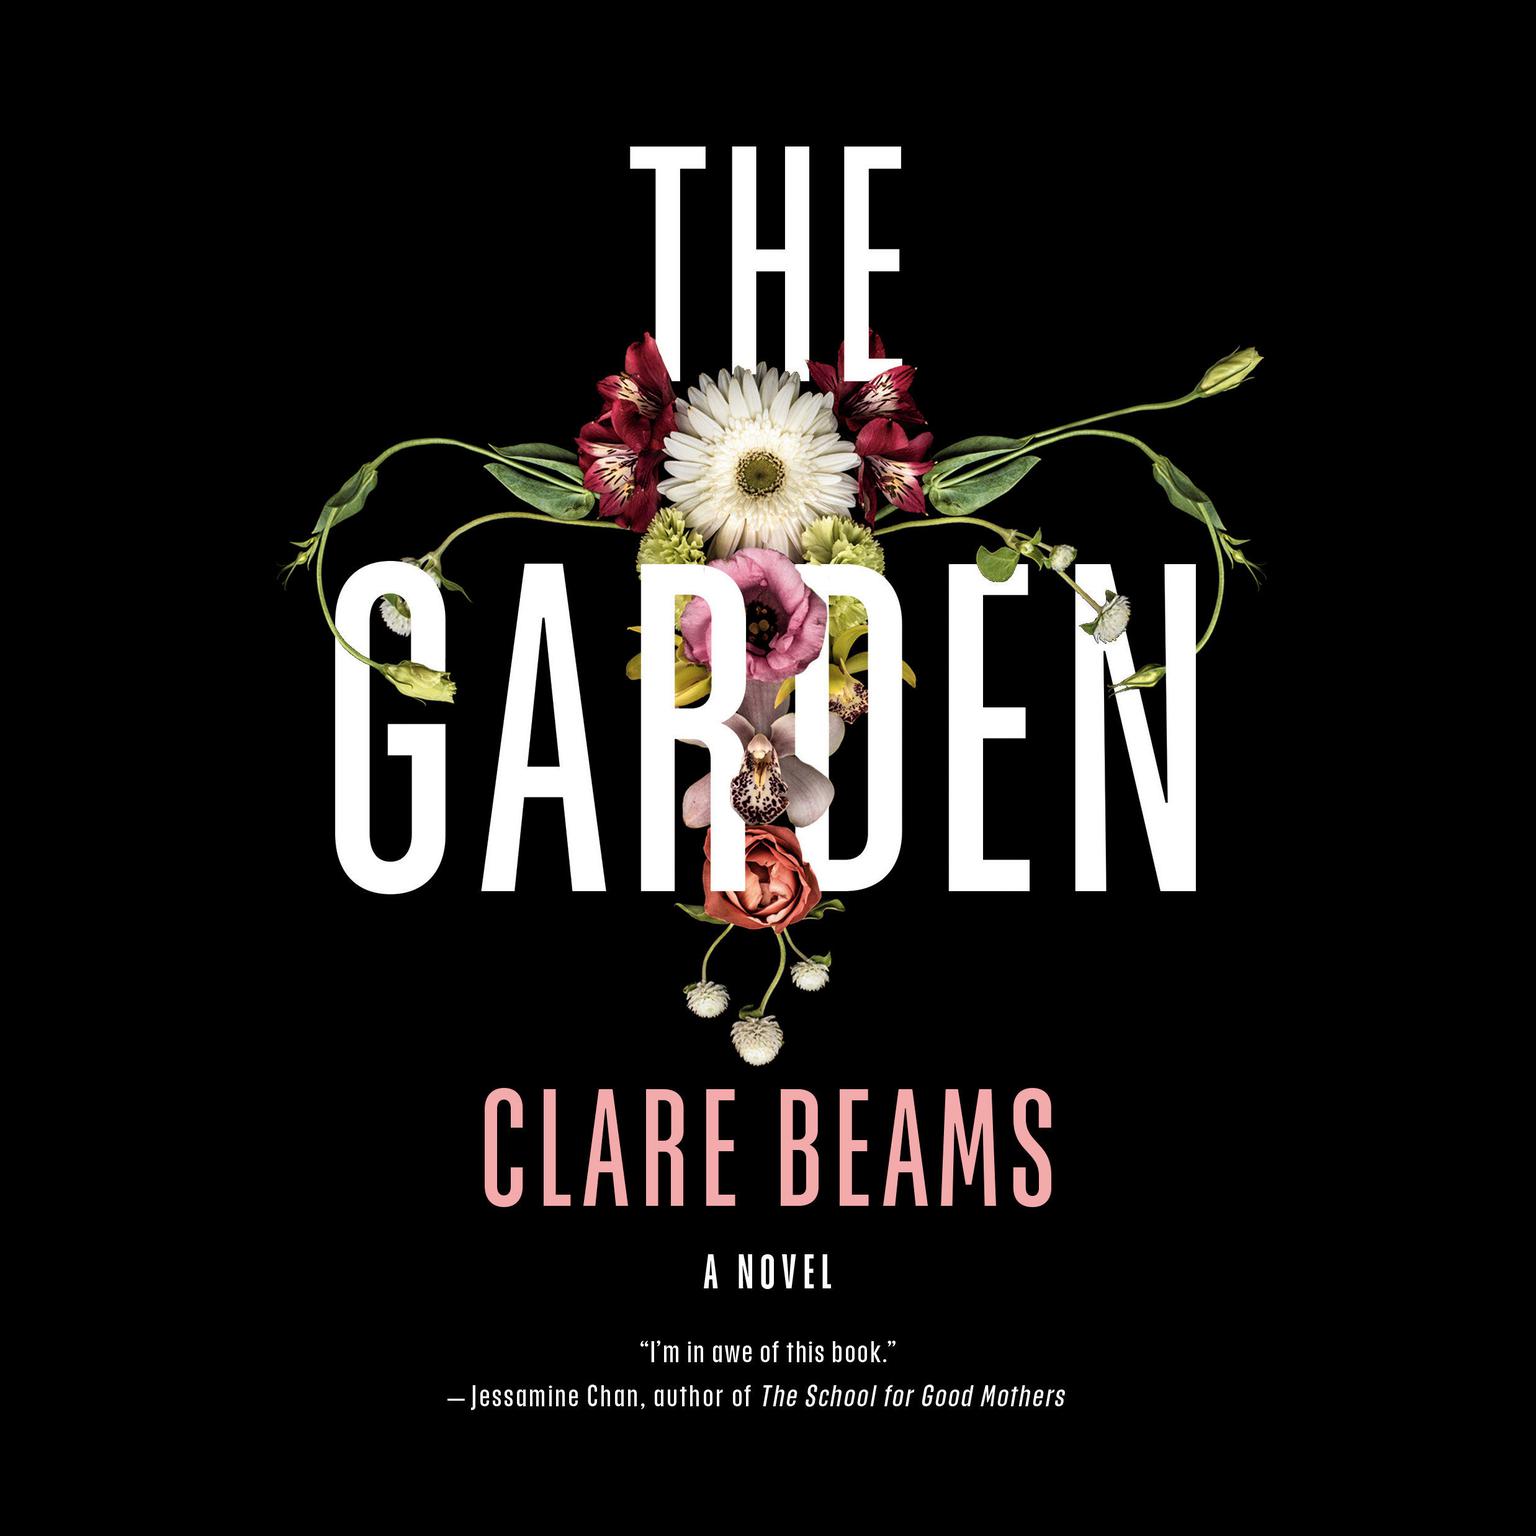 The Garden: A Novel Audiobook, by Clare Beams